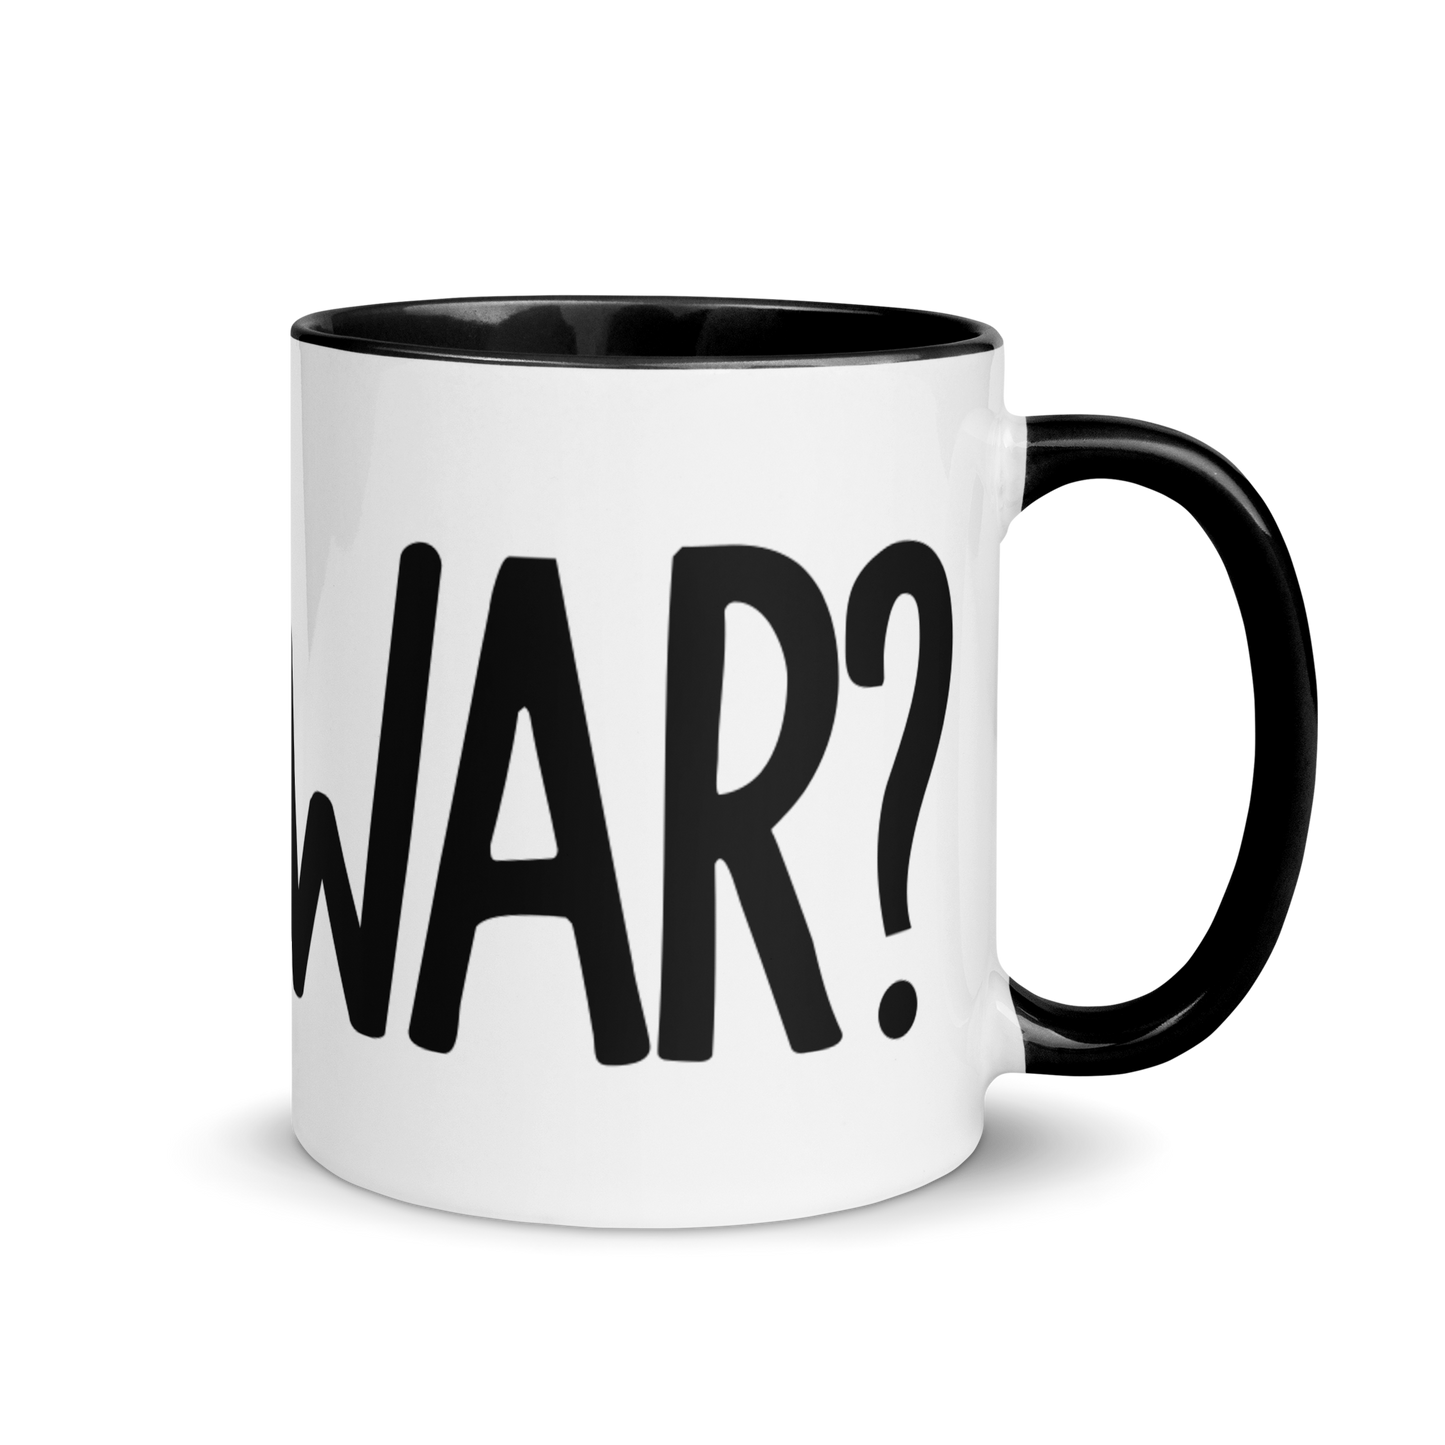 Is It War? Mug